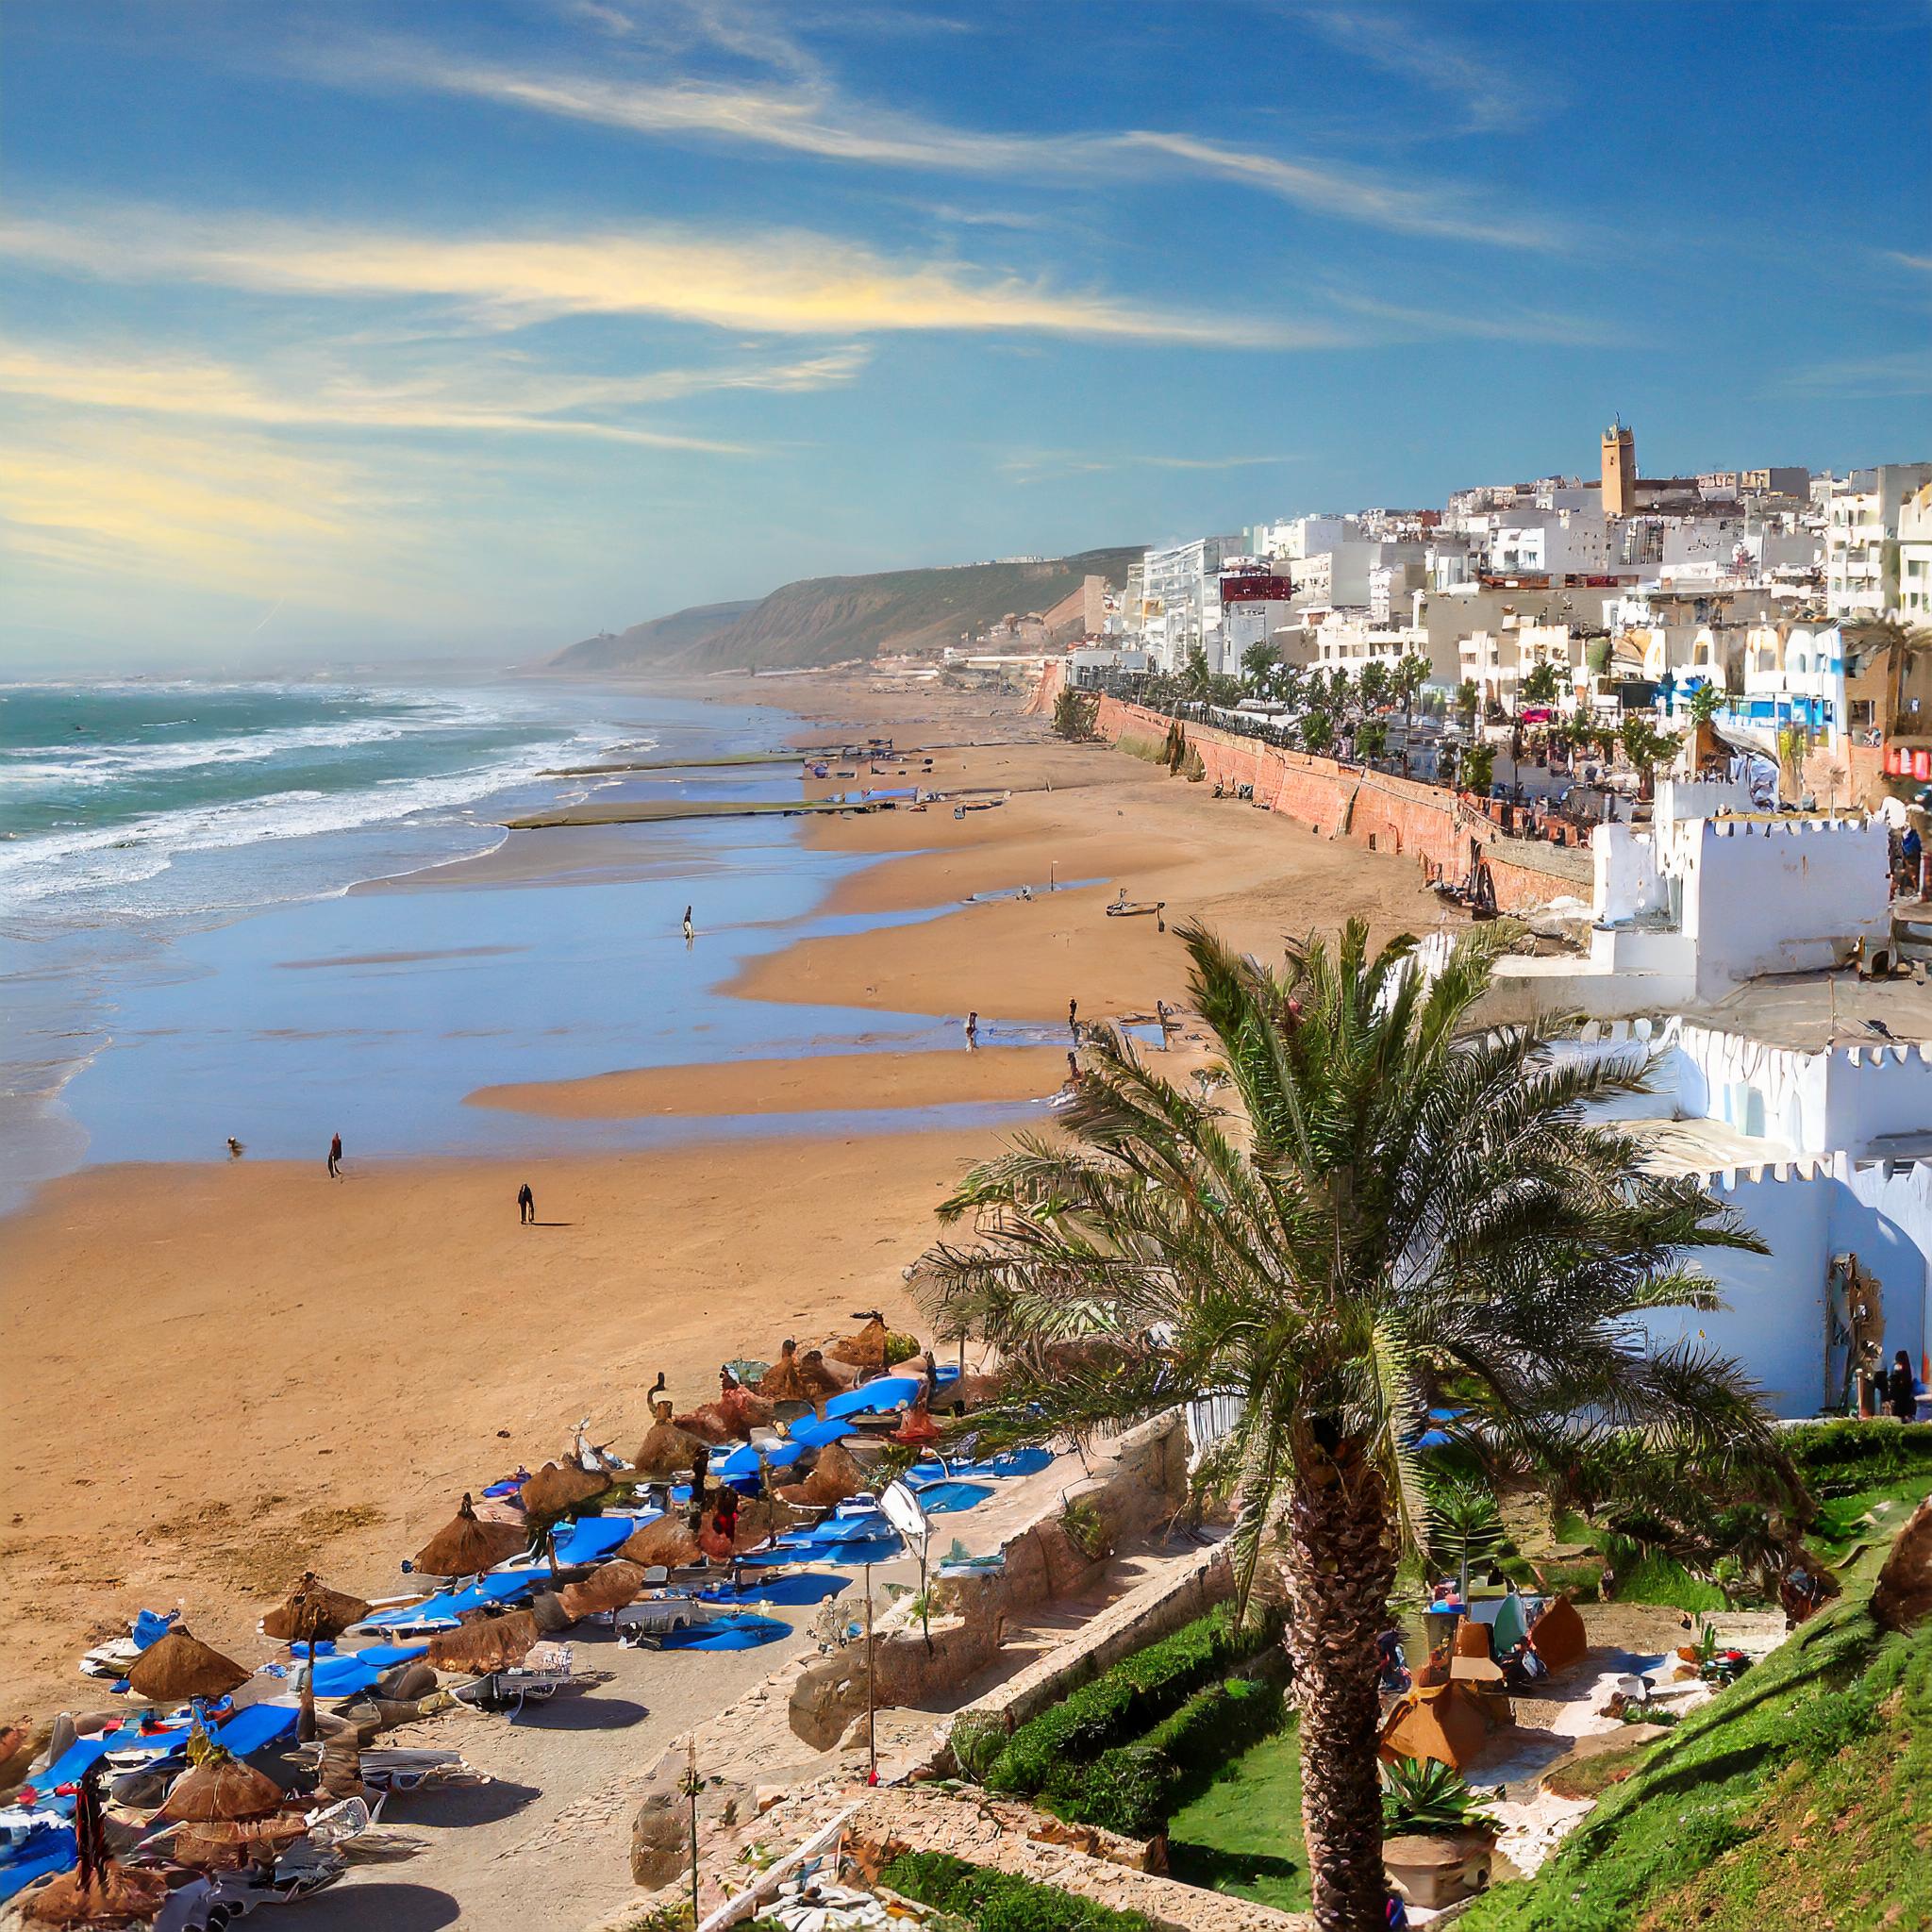  Firefly Beachside Ocean View of Agadir, Morocco